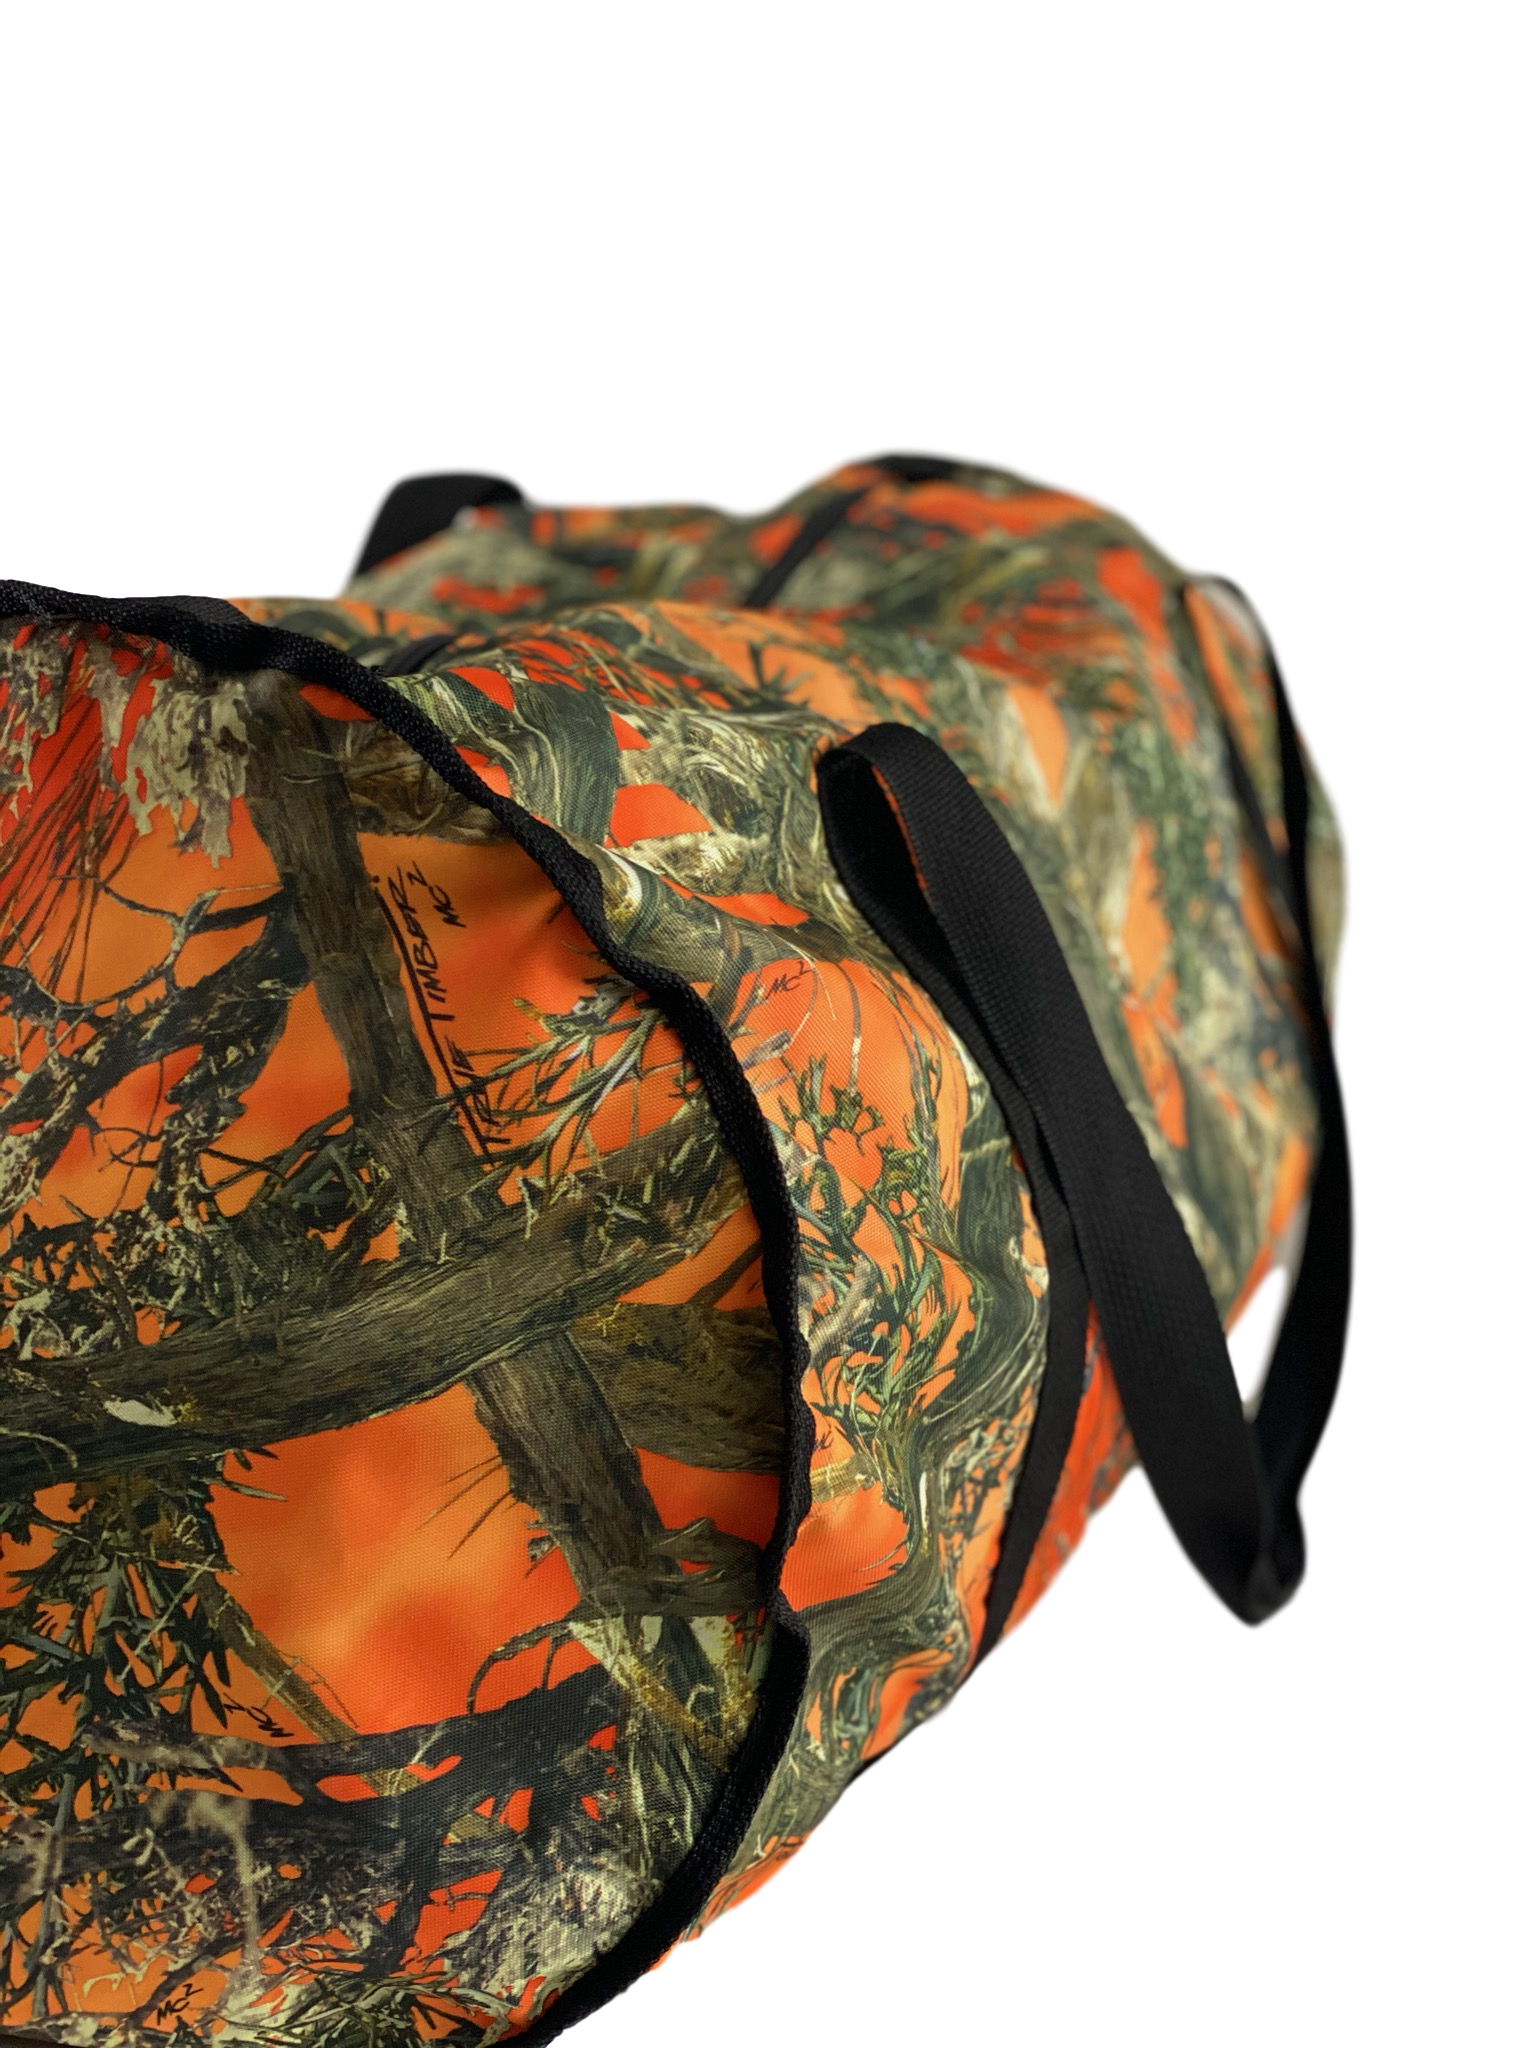 camo hunting bag - orange camo hunting bag 